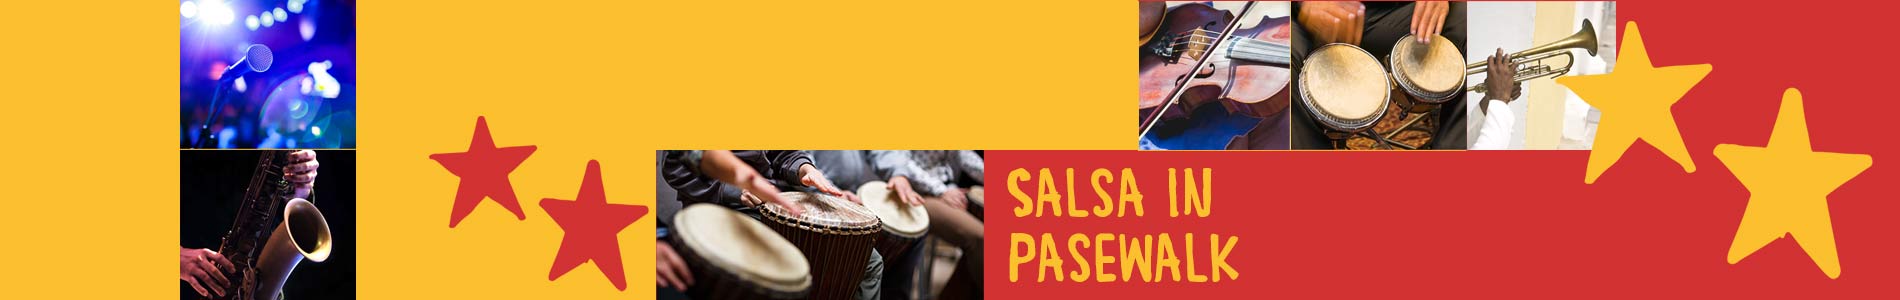 Salsa in Pasewalk – Salsa lernen und tanzen, Tanzkurse, Partys, Veranstaltungen